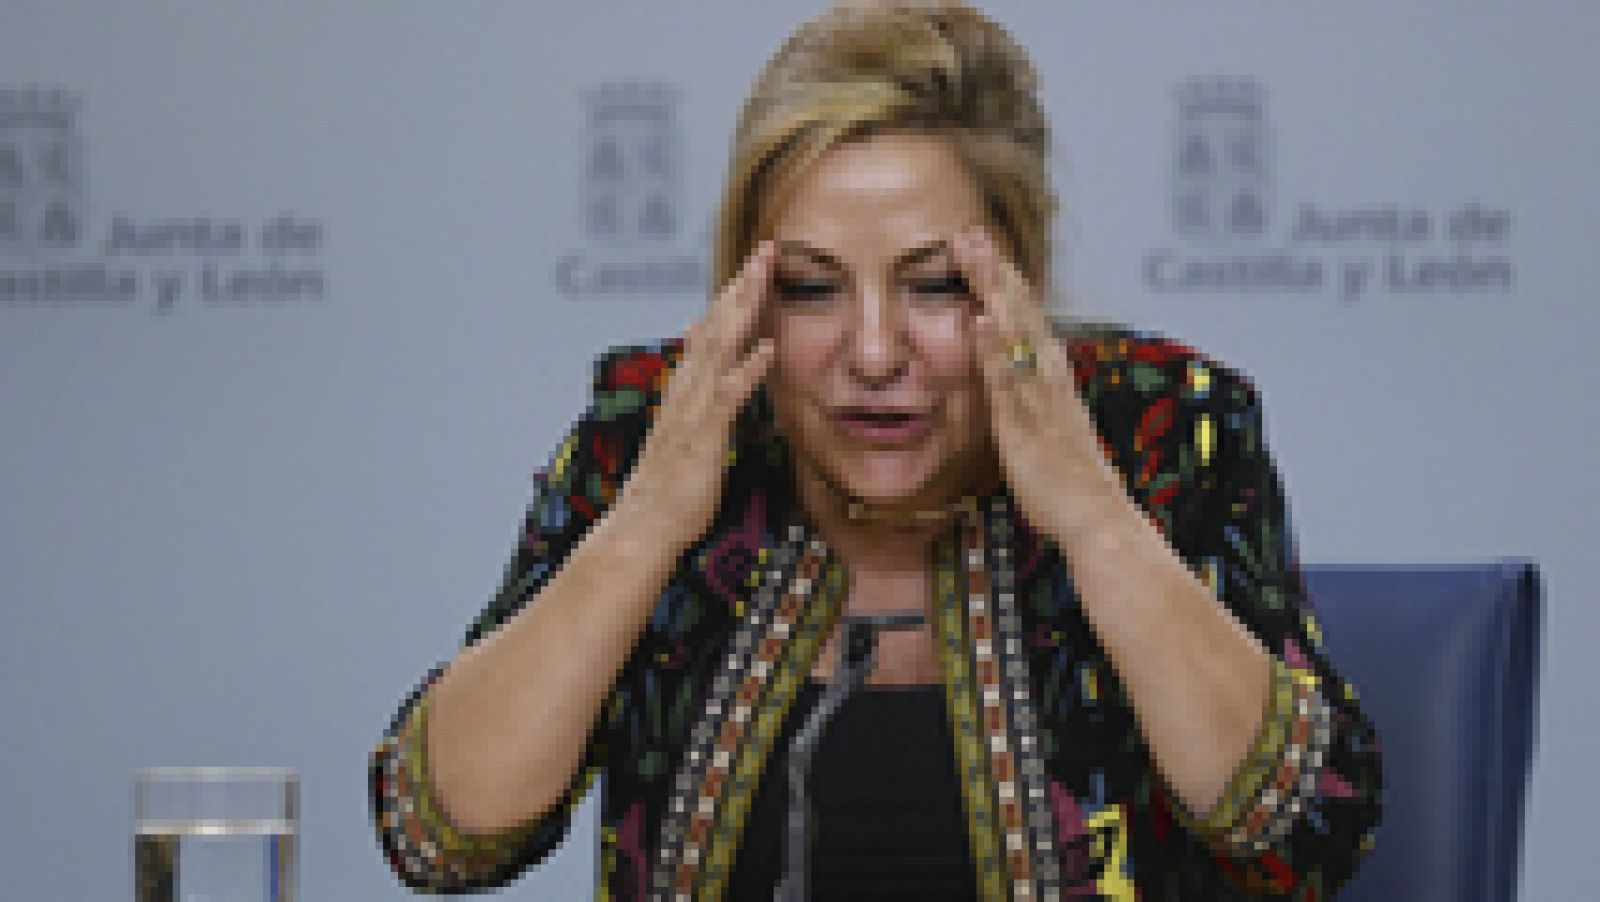 Dimite la vicepresidenta de Castilla y León al triplicar la tasa de alcoholemia tras un incidente de tráfico